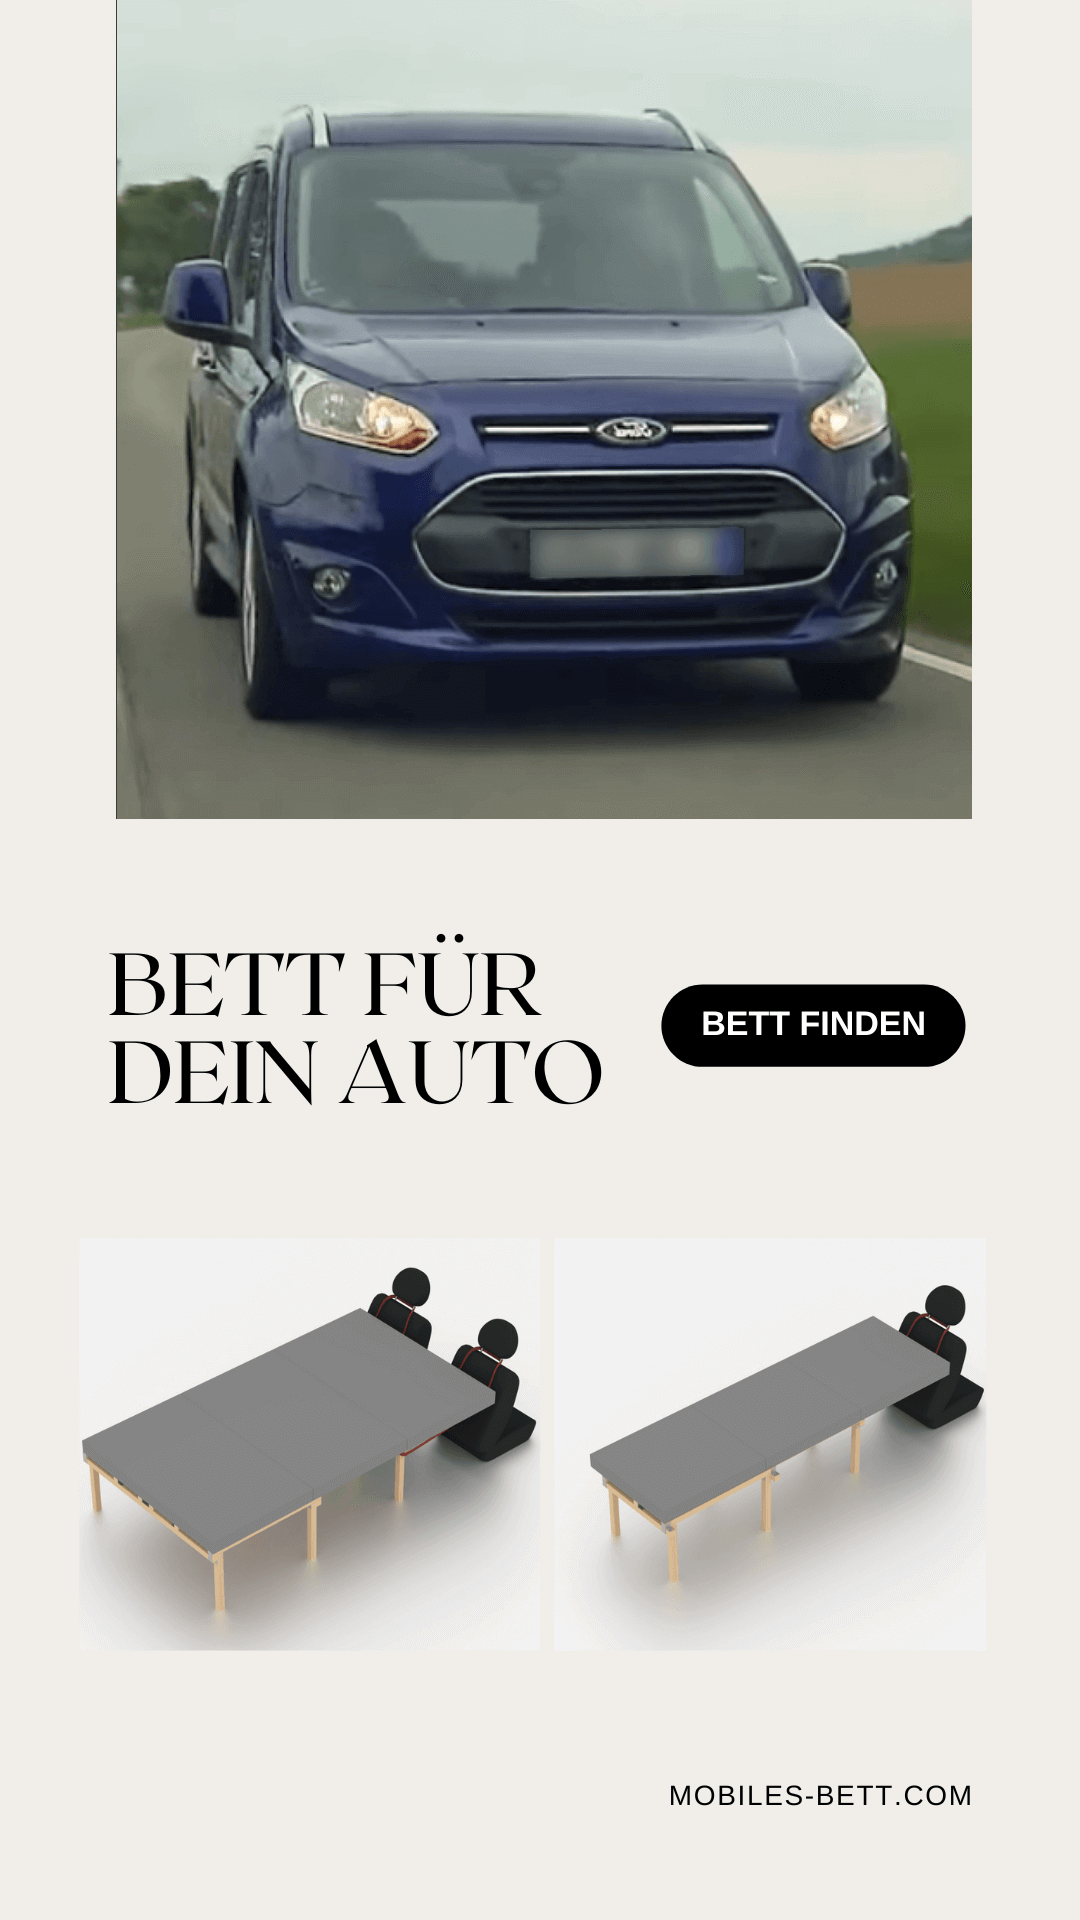 Bett für Ford Tourneo Connect selbst bauen - Anleitung für Einzel-, Doppel- und Kombi-Bett - becomePro